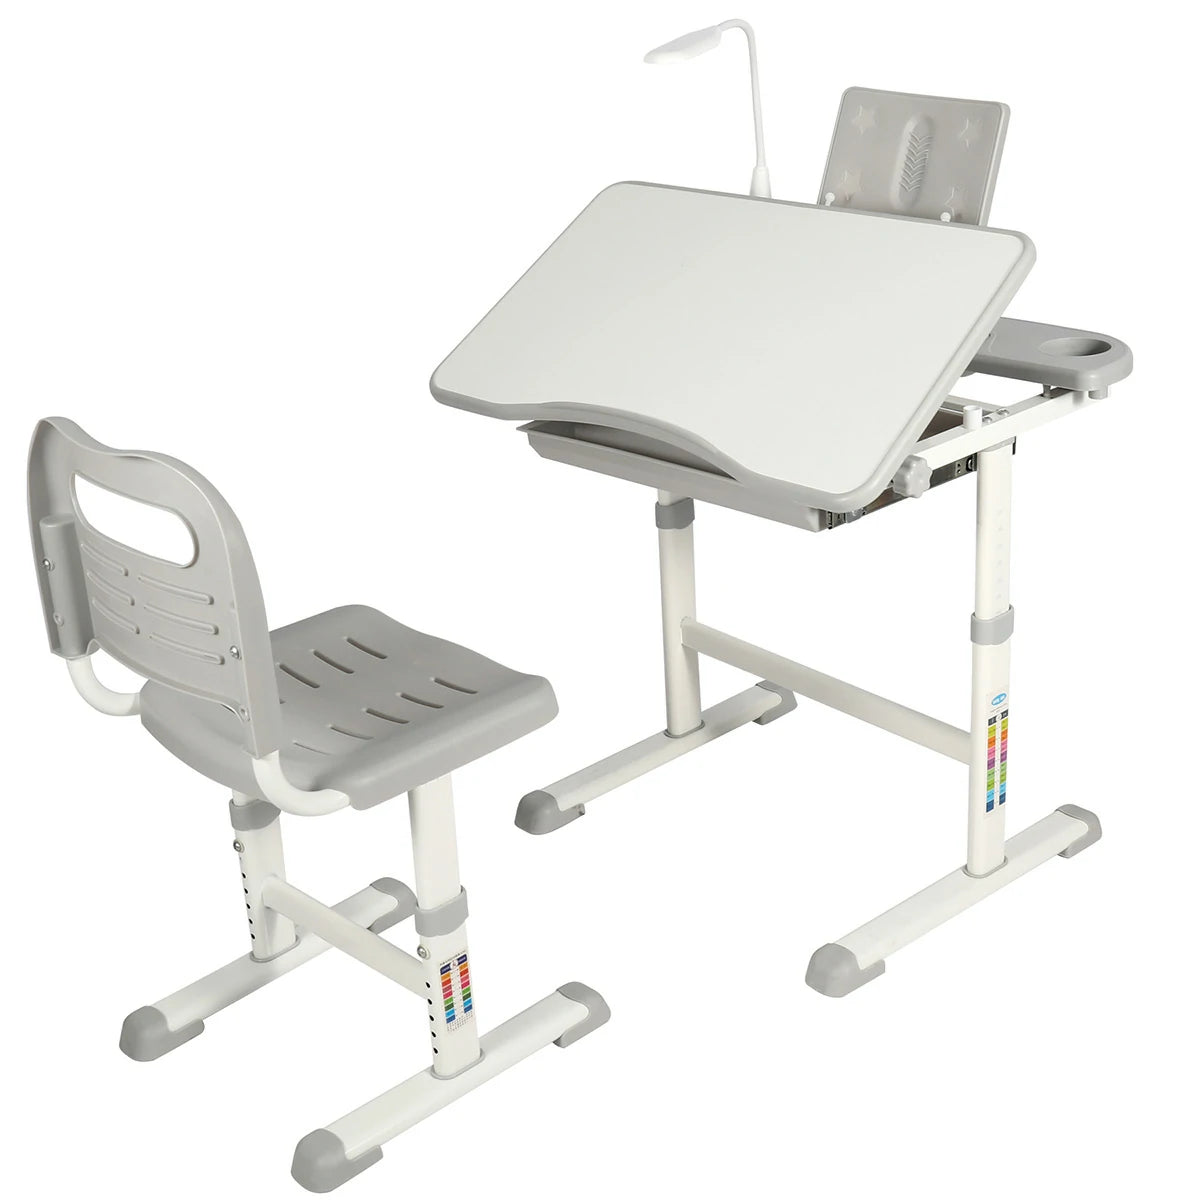 REDCAMP Adjustable Student Desk and Chair Set with Drawing Tilt Desktop